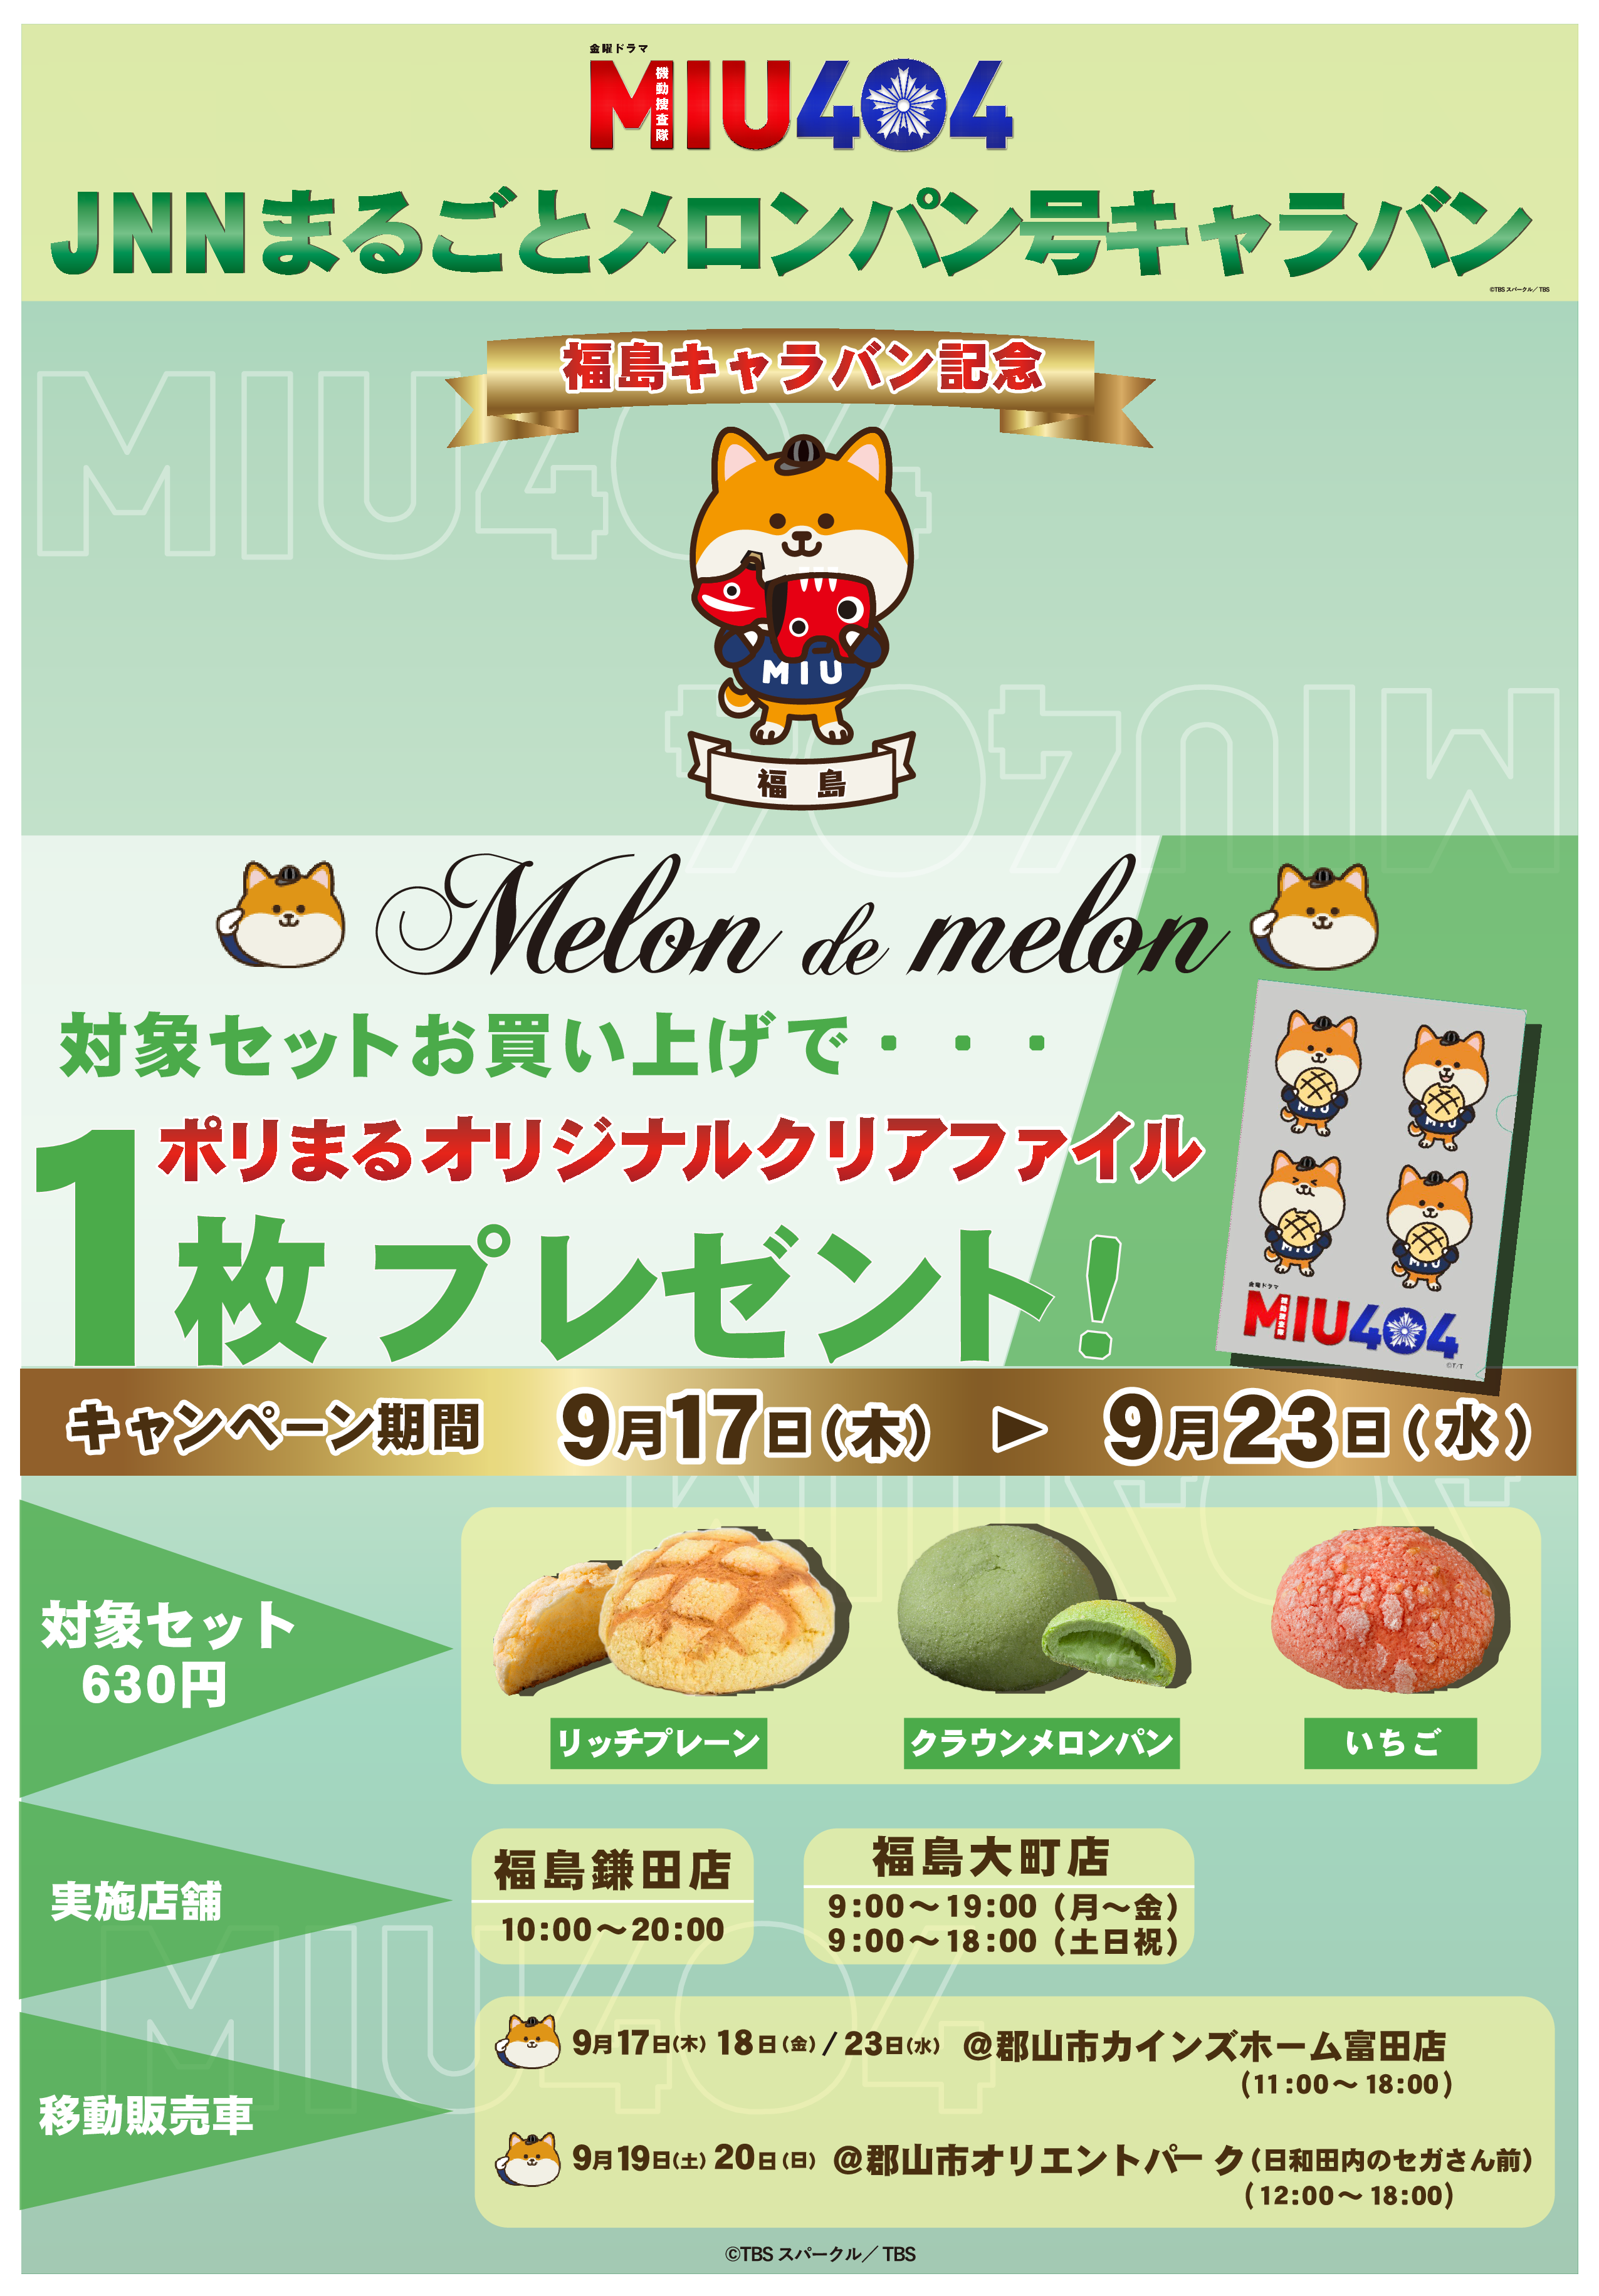 メロンパン専門店】Melon de Melon 「MIU404」コラボ第2弾『JNN ...